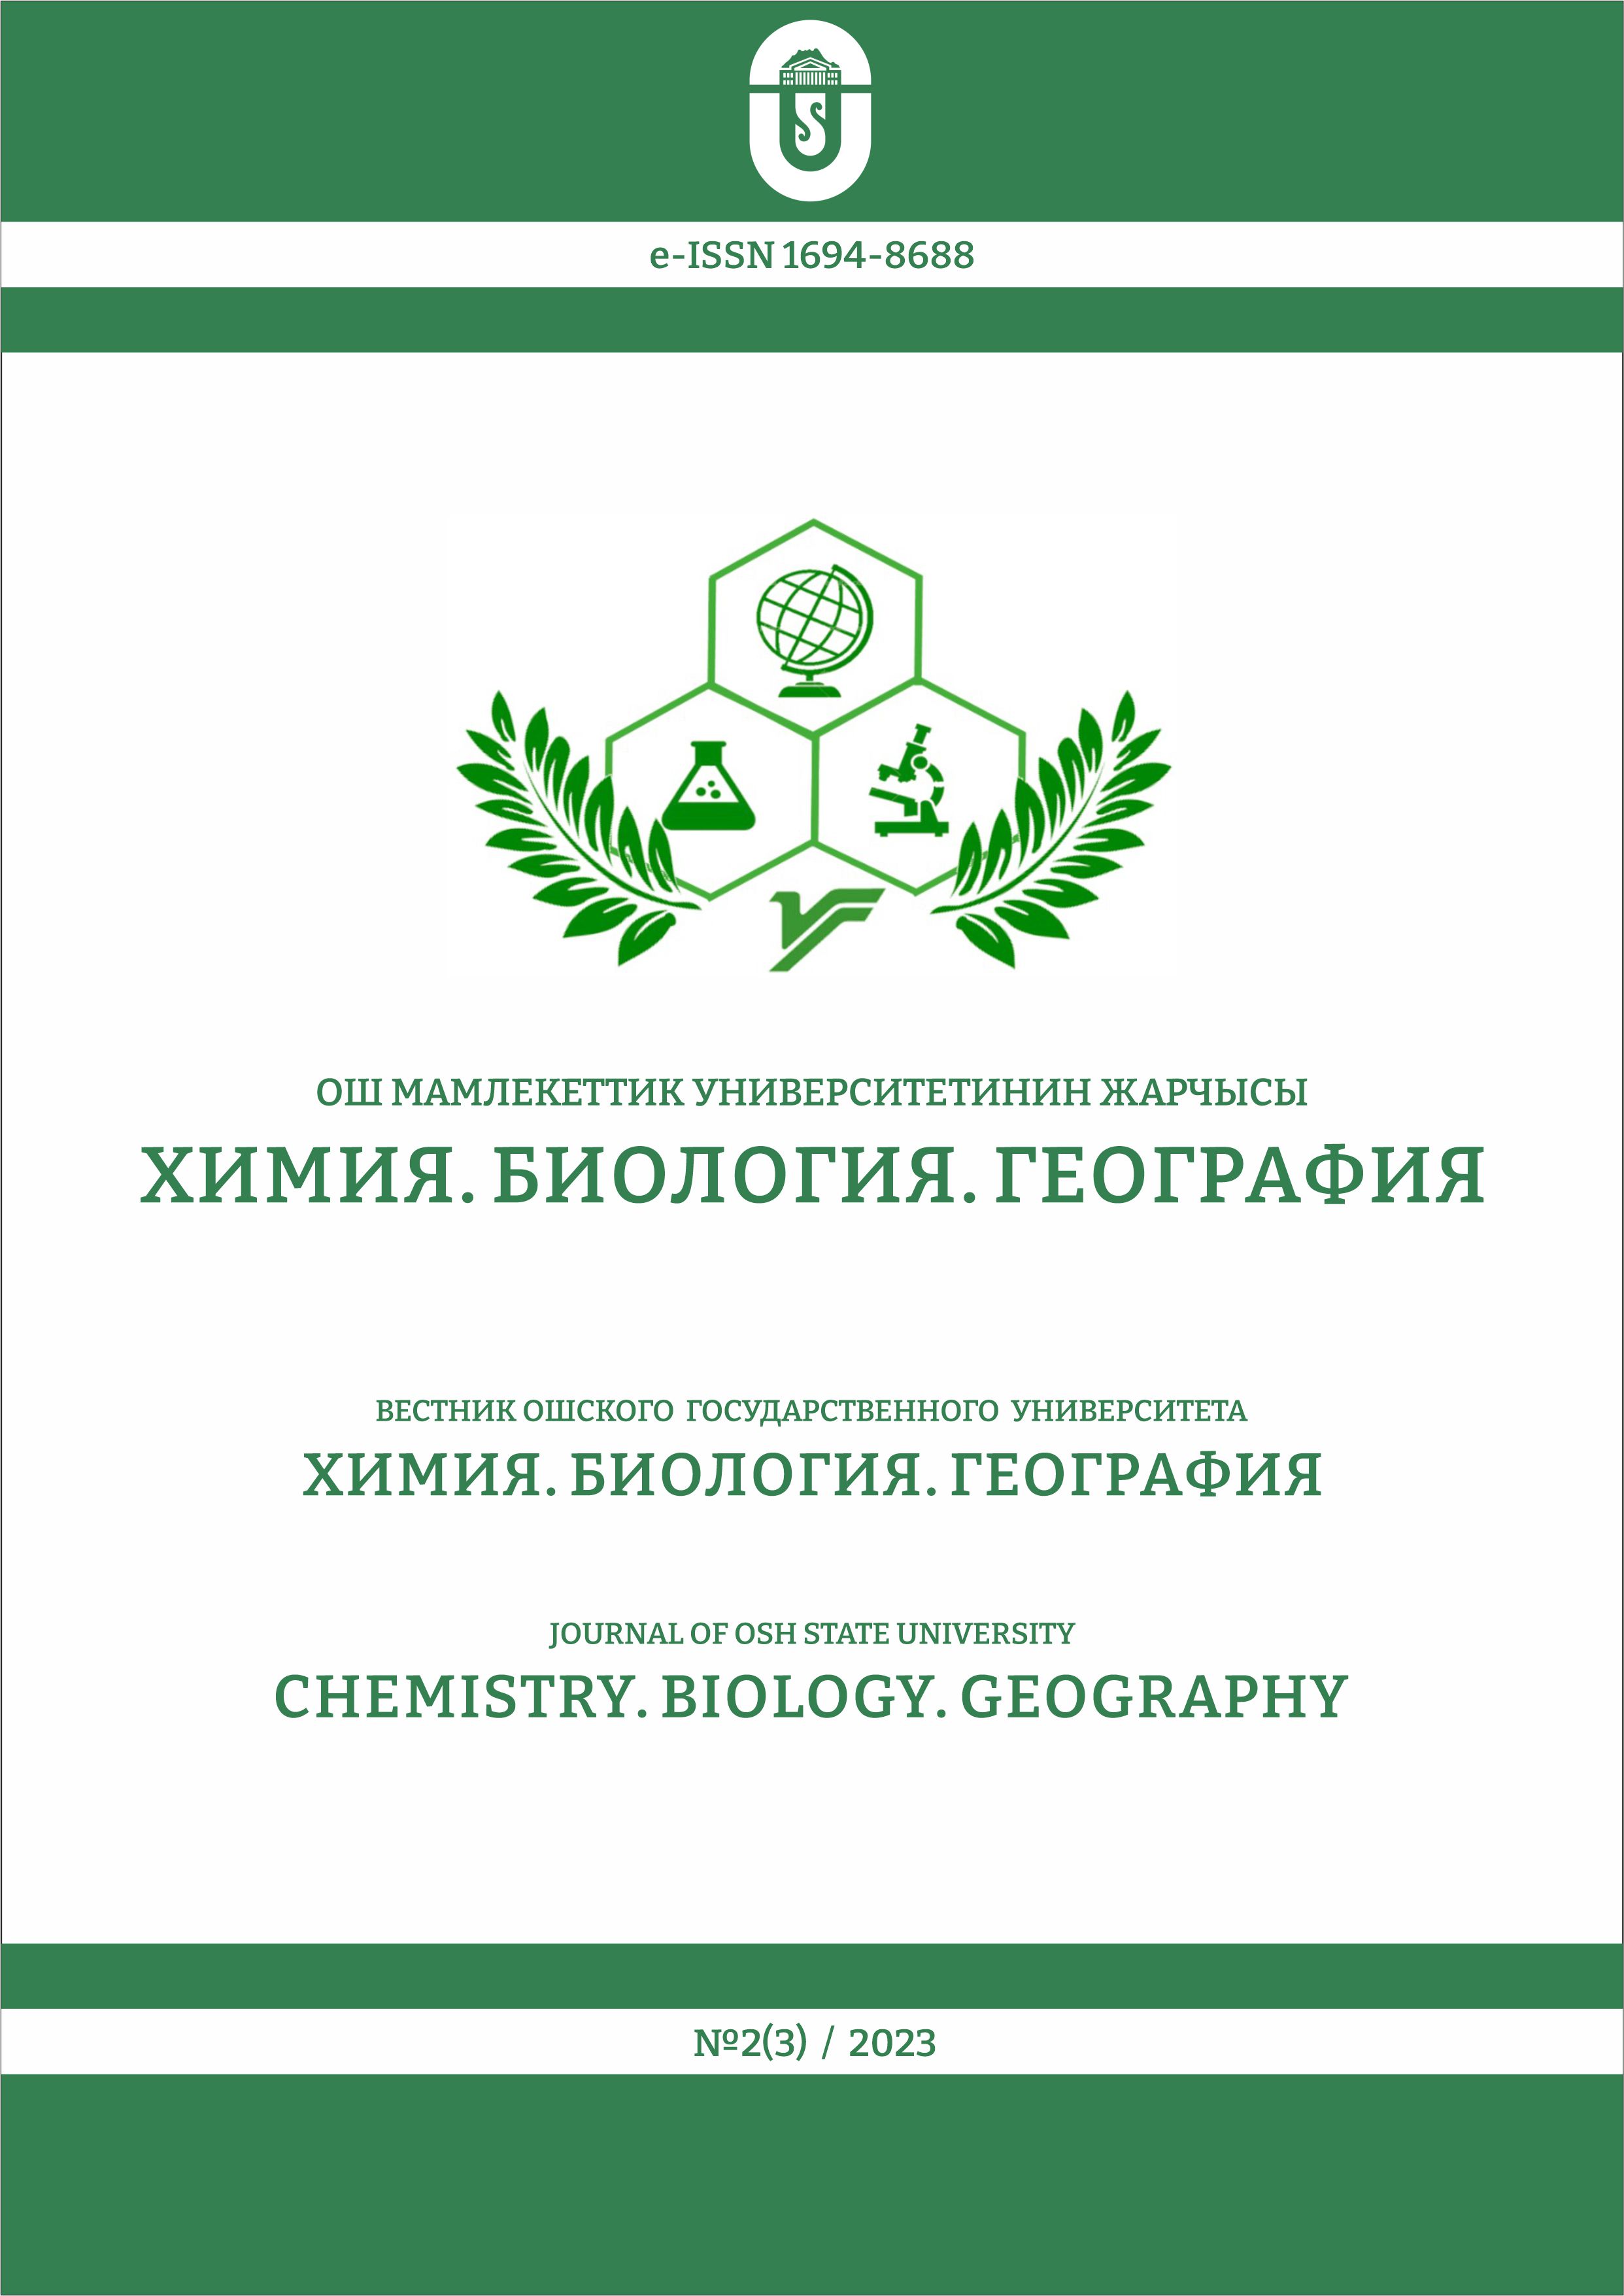 					Көрсөтүү № 2(3) (2023): Ош мамлекеттик университетинин Жарчысы. Химия. Биология. География
				